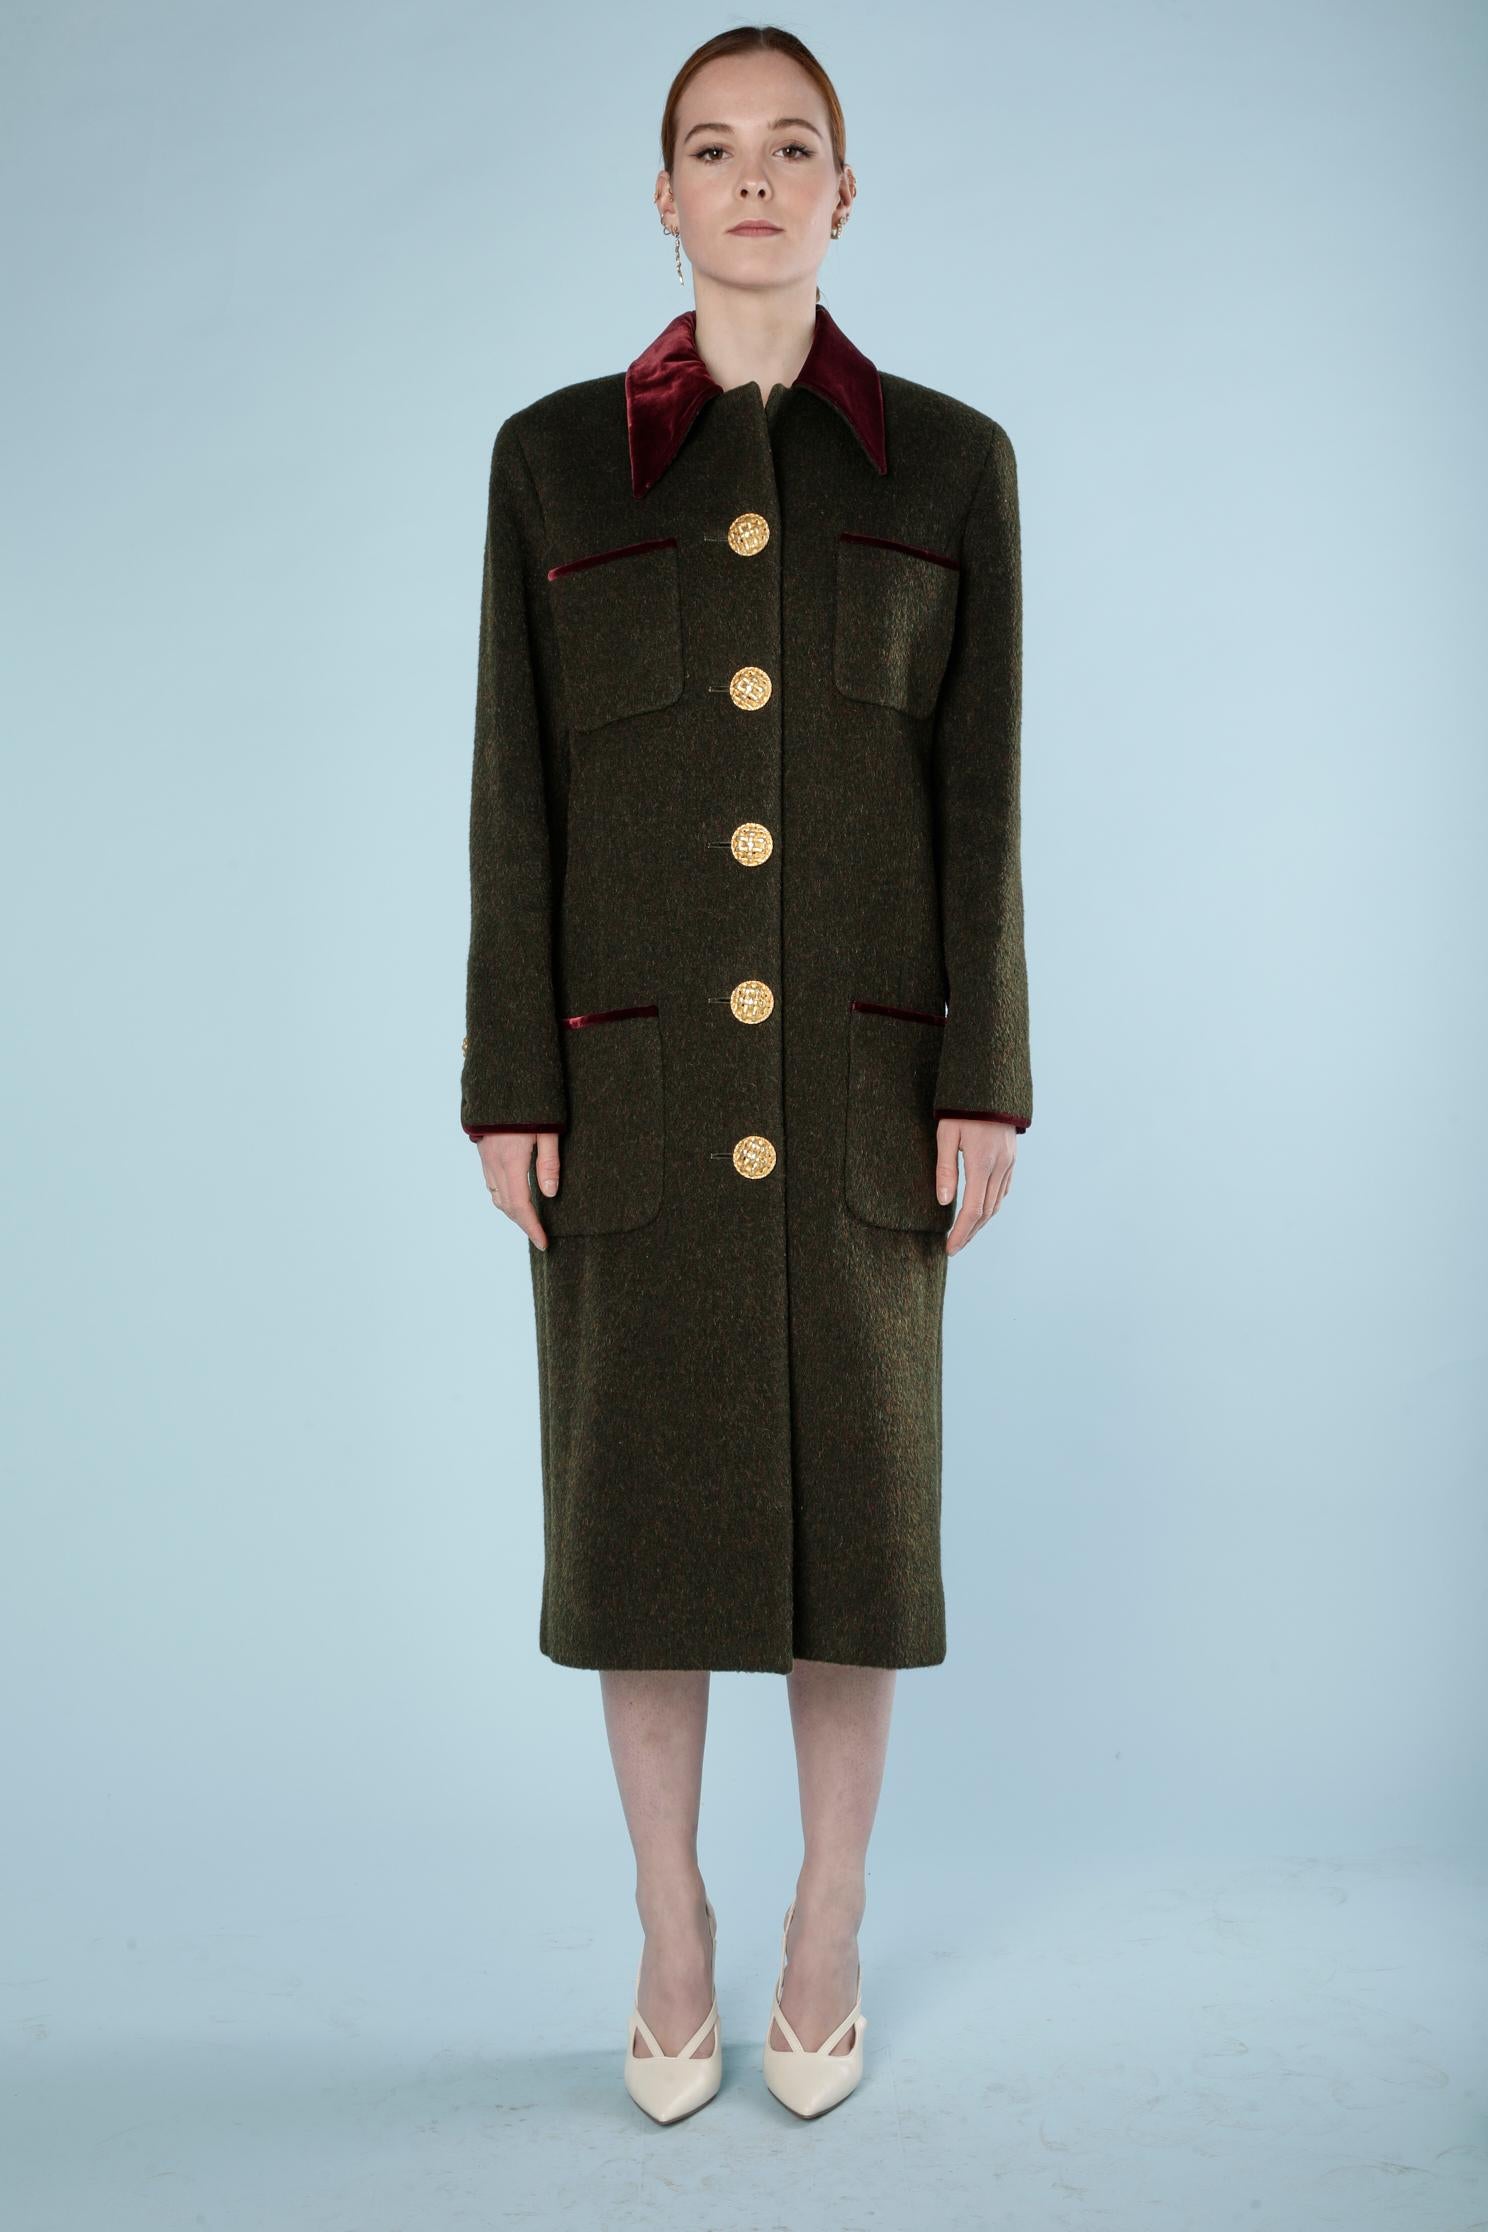 Kaki wool coat with burgundy silk velvet collar and piping. Kaki Branded lining. 
SIZE 40 (M) 